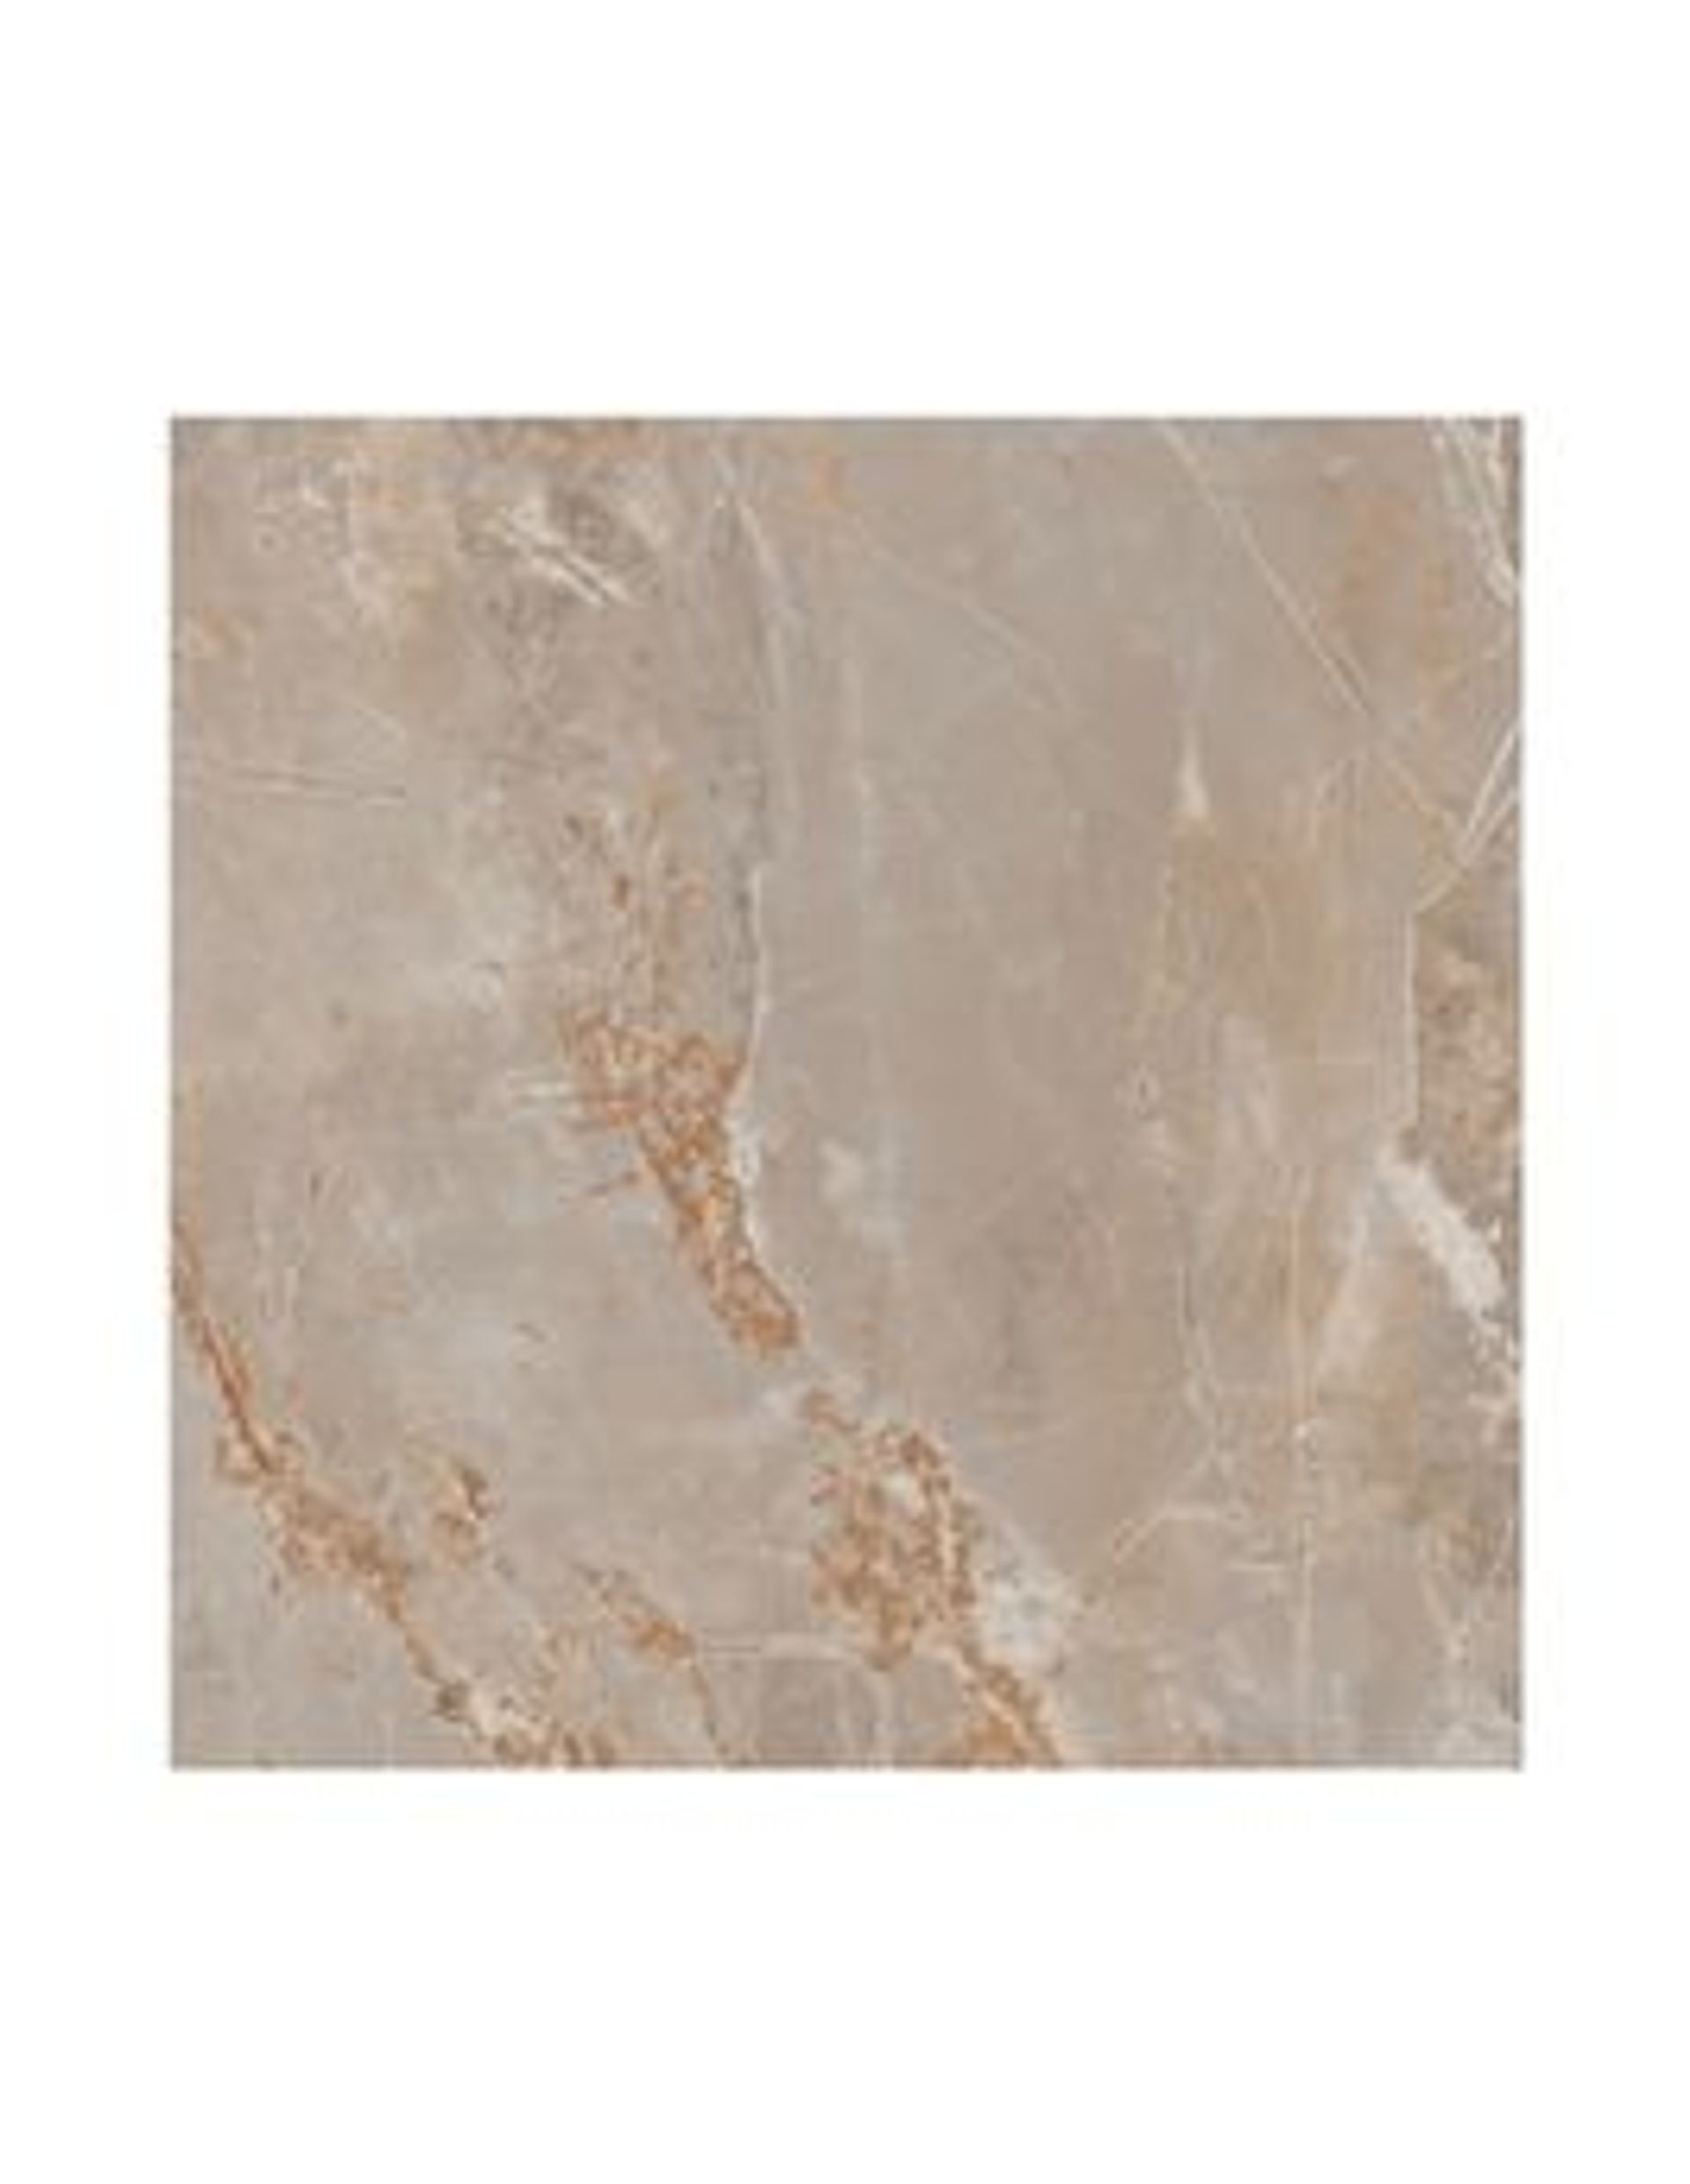 Carrelage RENAISSANCE, aspect marbre beige, dim 60.00 x 60.00 cm